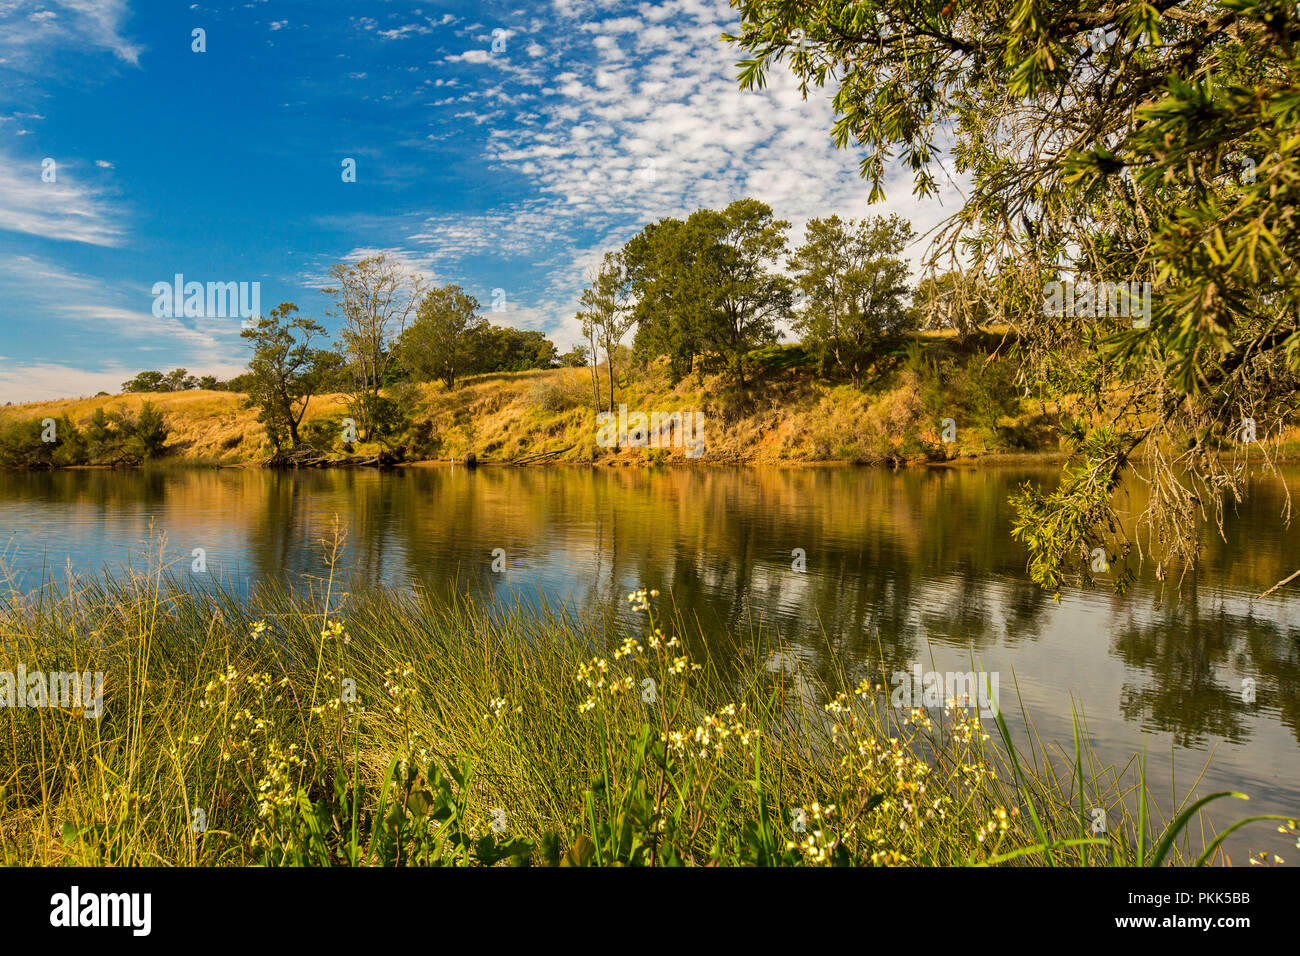 Atemberaubende australische Landschaft mit ruhigen blauen Wassern des Manning River durch goldene Gräser, Wildblumen und einheimische Bäume unter blauem Himmel gesäumt - Wingham NSW Stockfoto